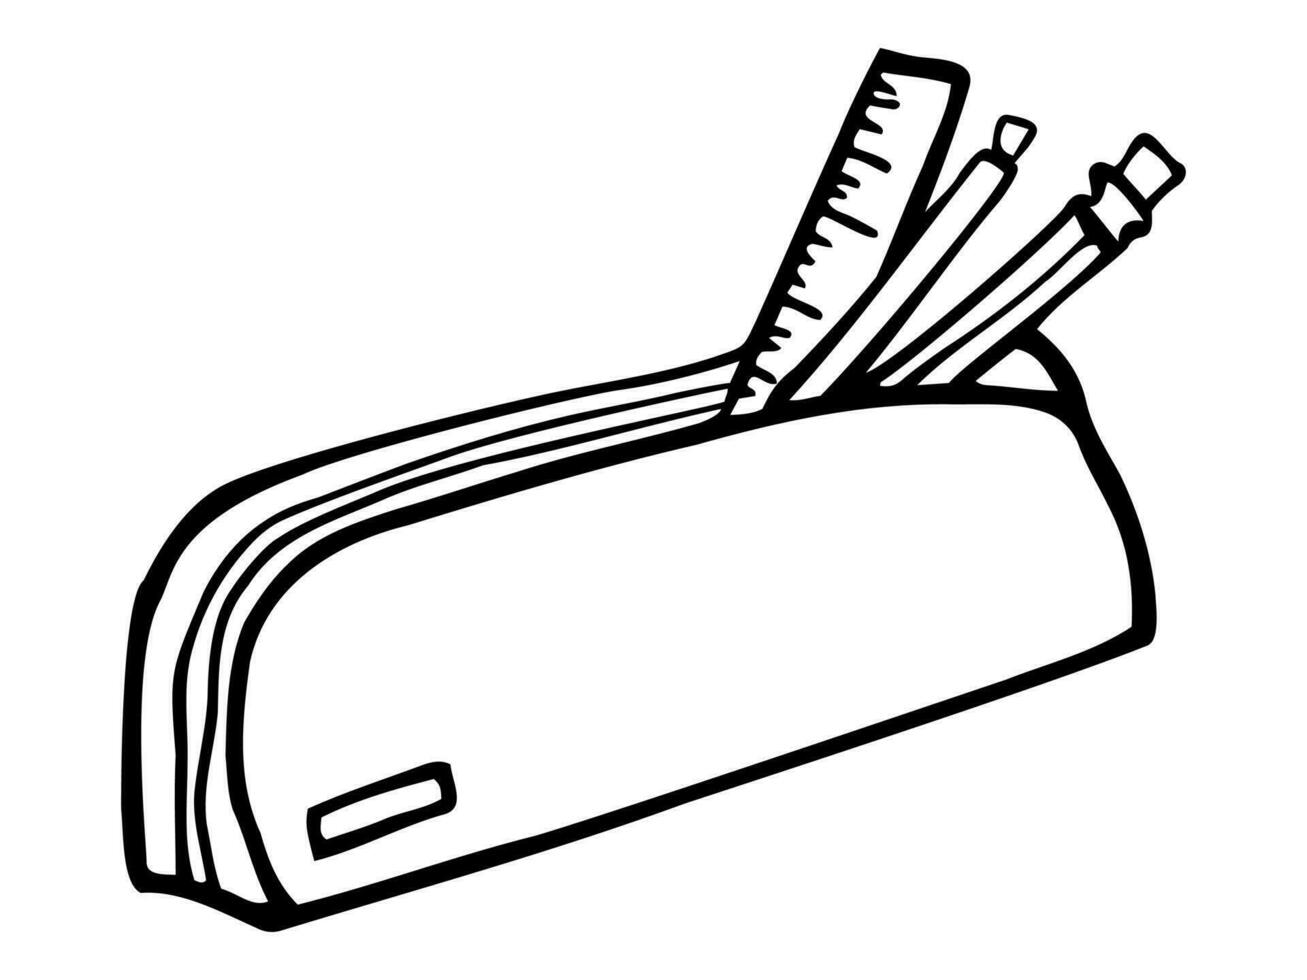 isolerat hand dragen vektor illustration av brevpapper för skola eller kontor leveranser och anteckningsblock av annorlunda design. penna, penna, highlighter, penna pennvässare, suddgummi, kalkylator, linjal isolerat